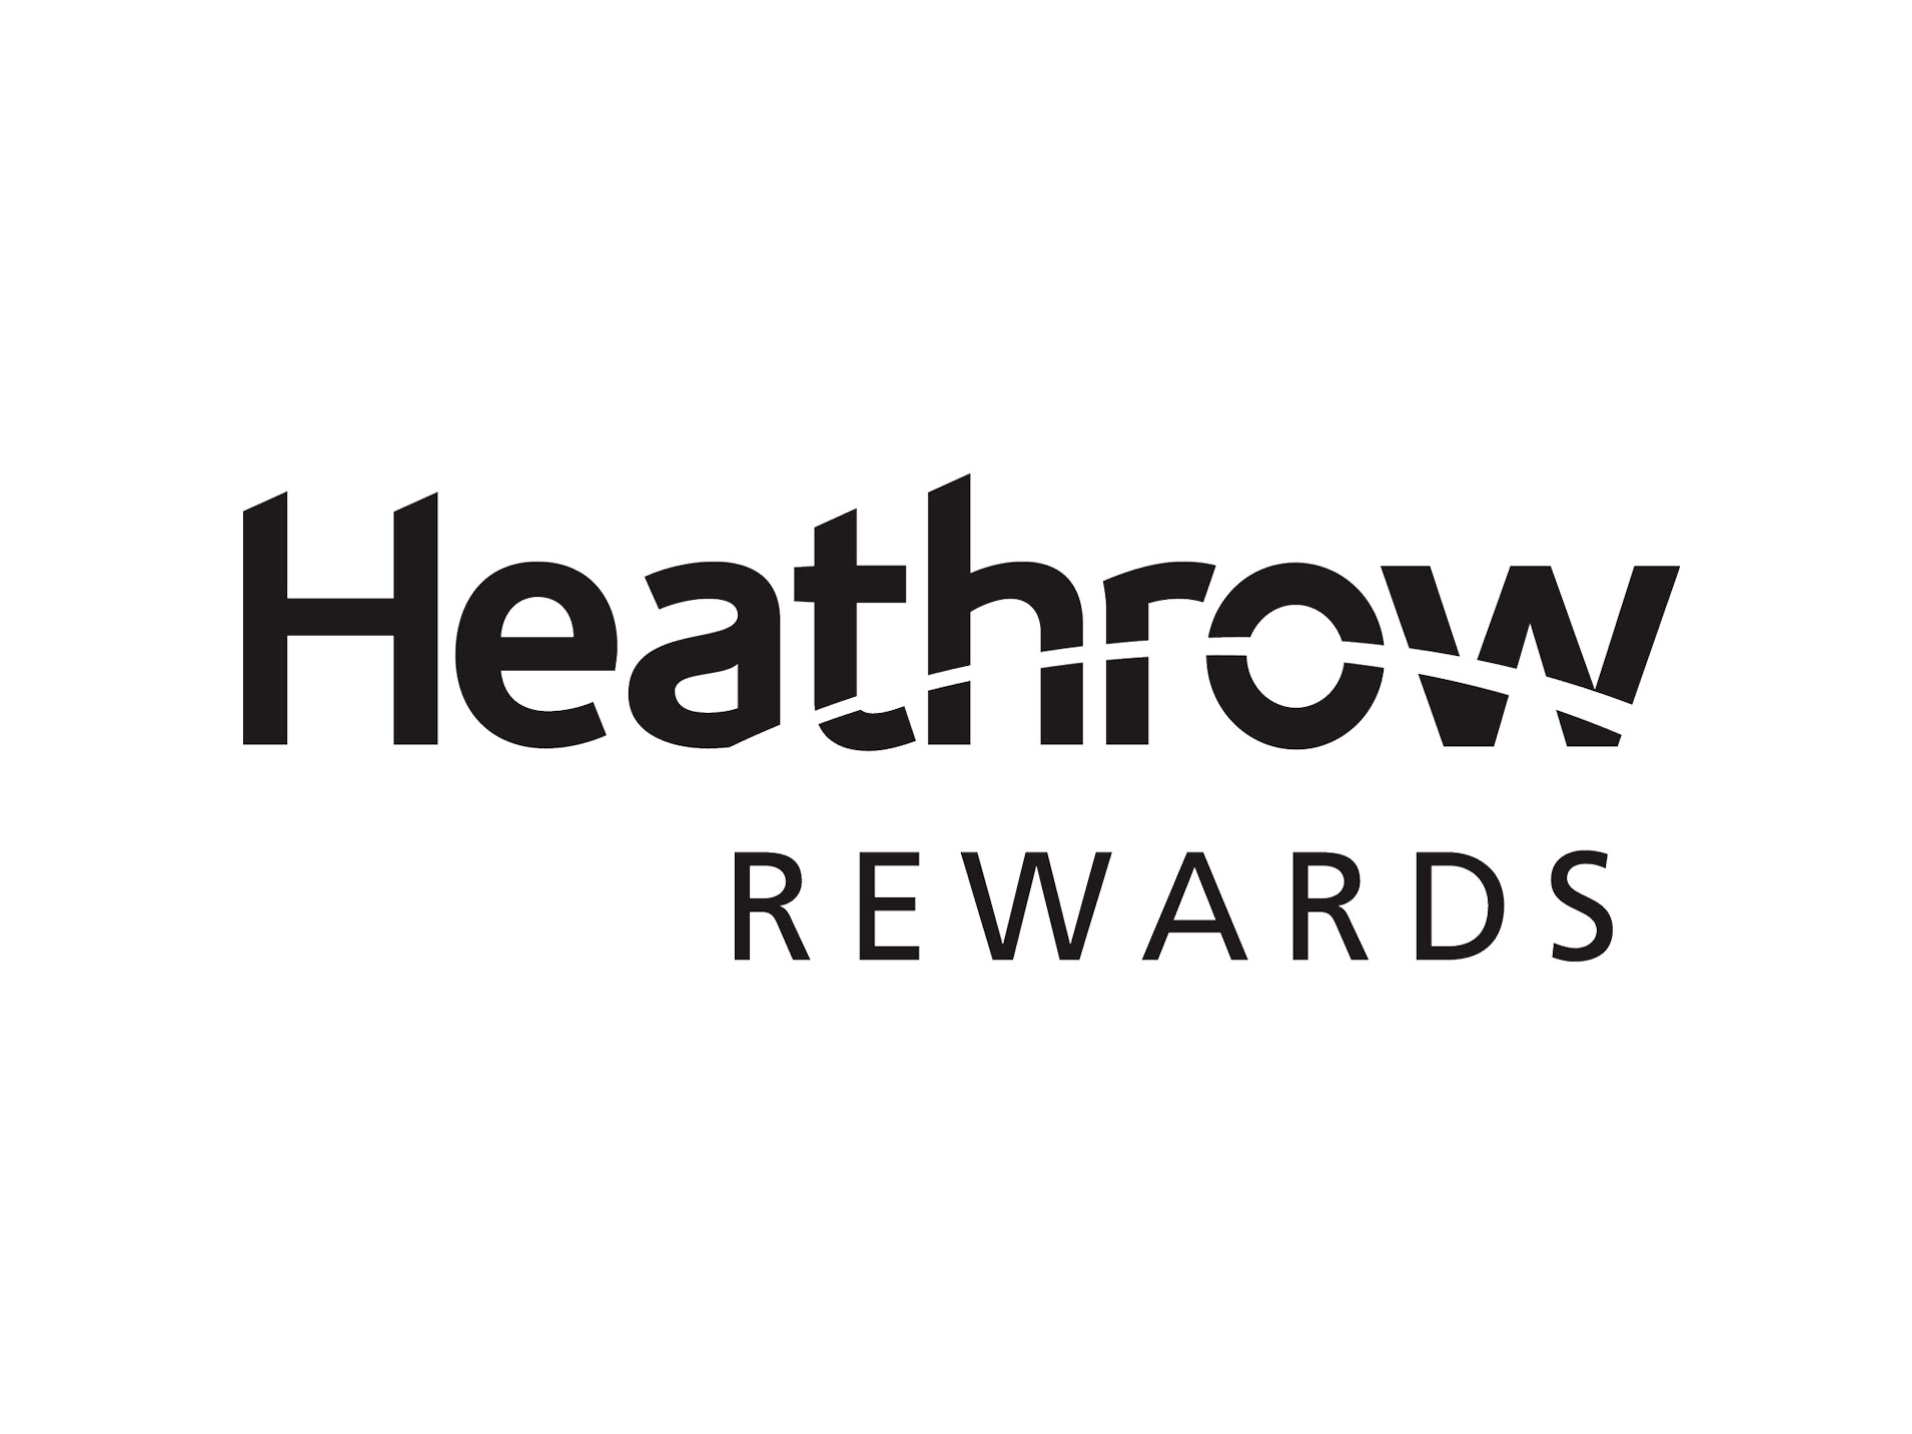 Heathrow Rewards logo